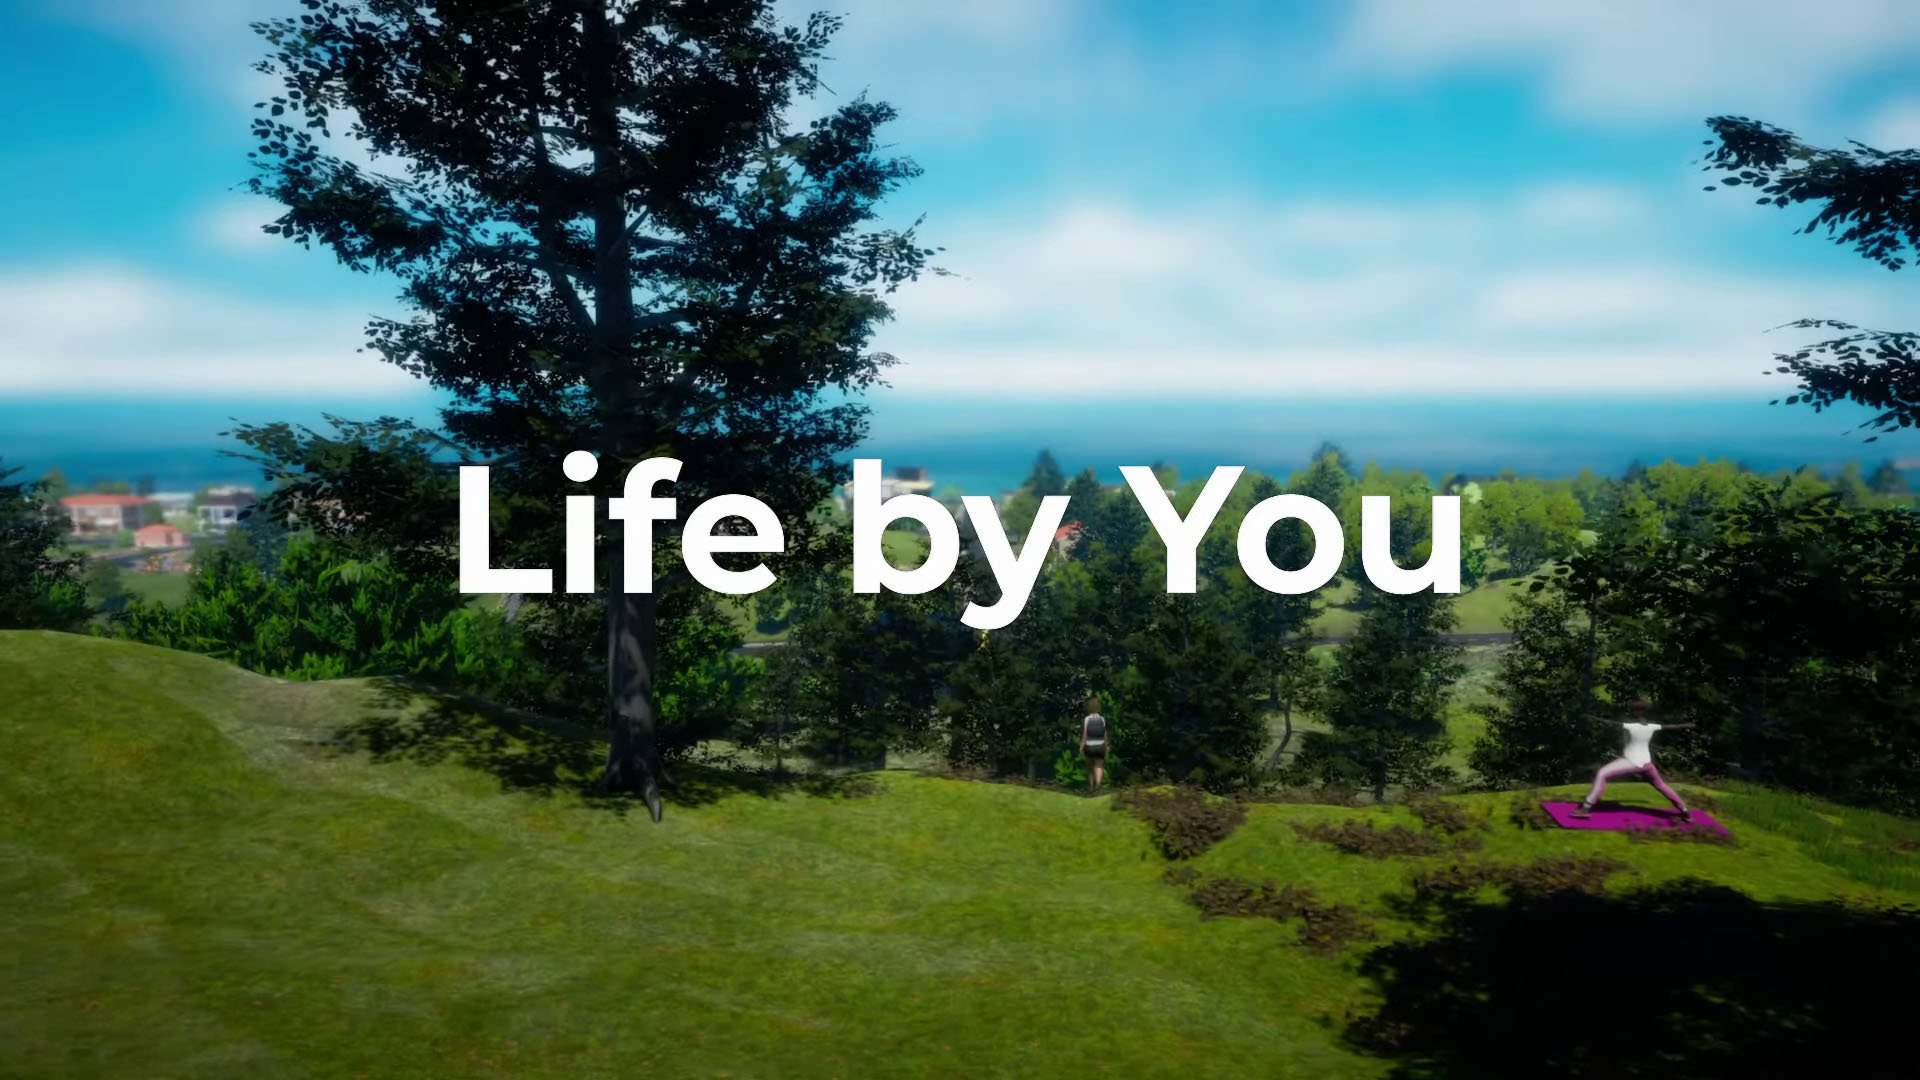 Les développeurs du principal concurrent des Sims - Life By You ont révélé la date de sortie du jeu en accès anticipé et ont partagé d'autres détails.